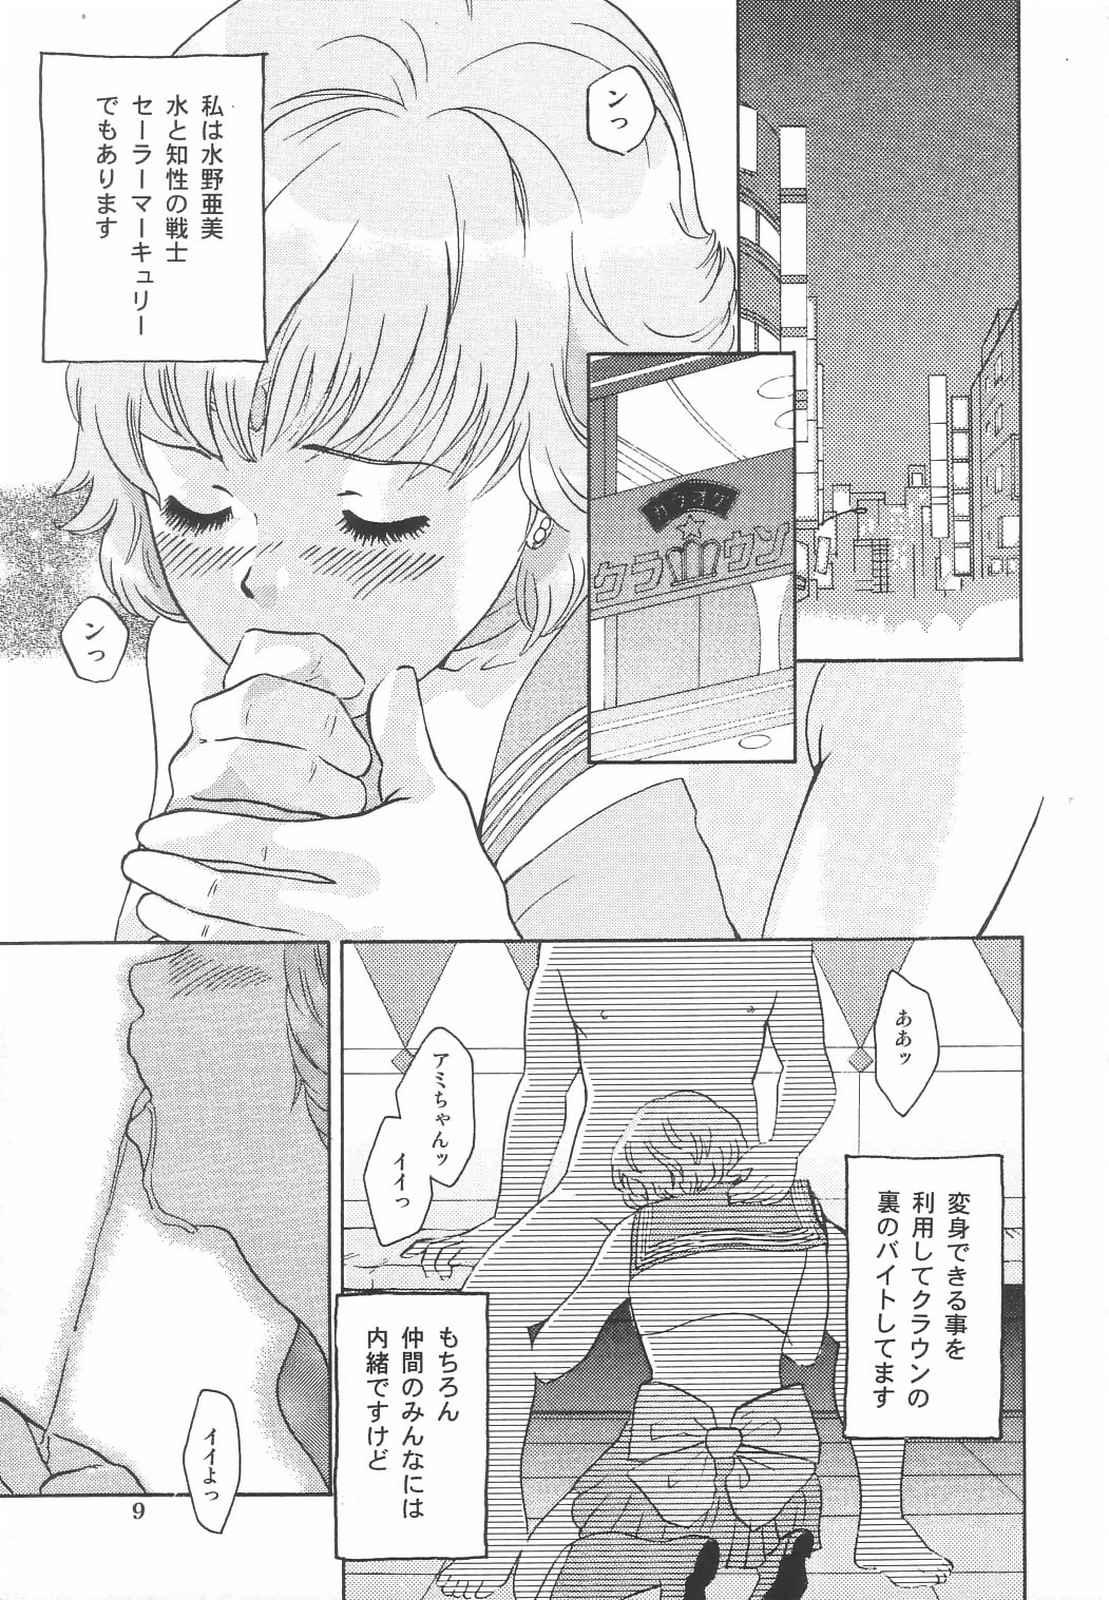 Storyline Tokusatsu Magazine x 2003 Fuyu Gou - Sailor moon Ichigo 100 Hot Pussy - Page 11